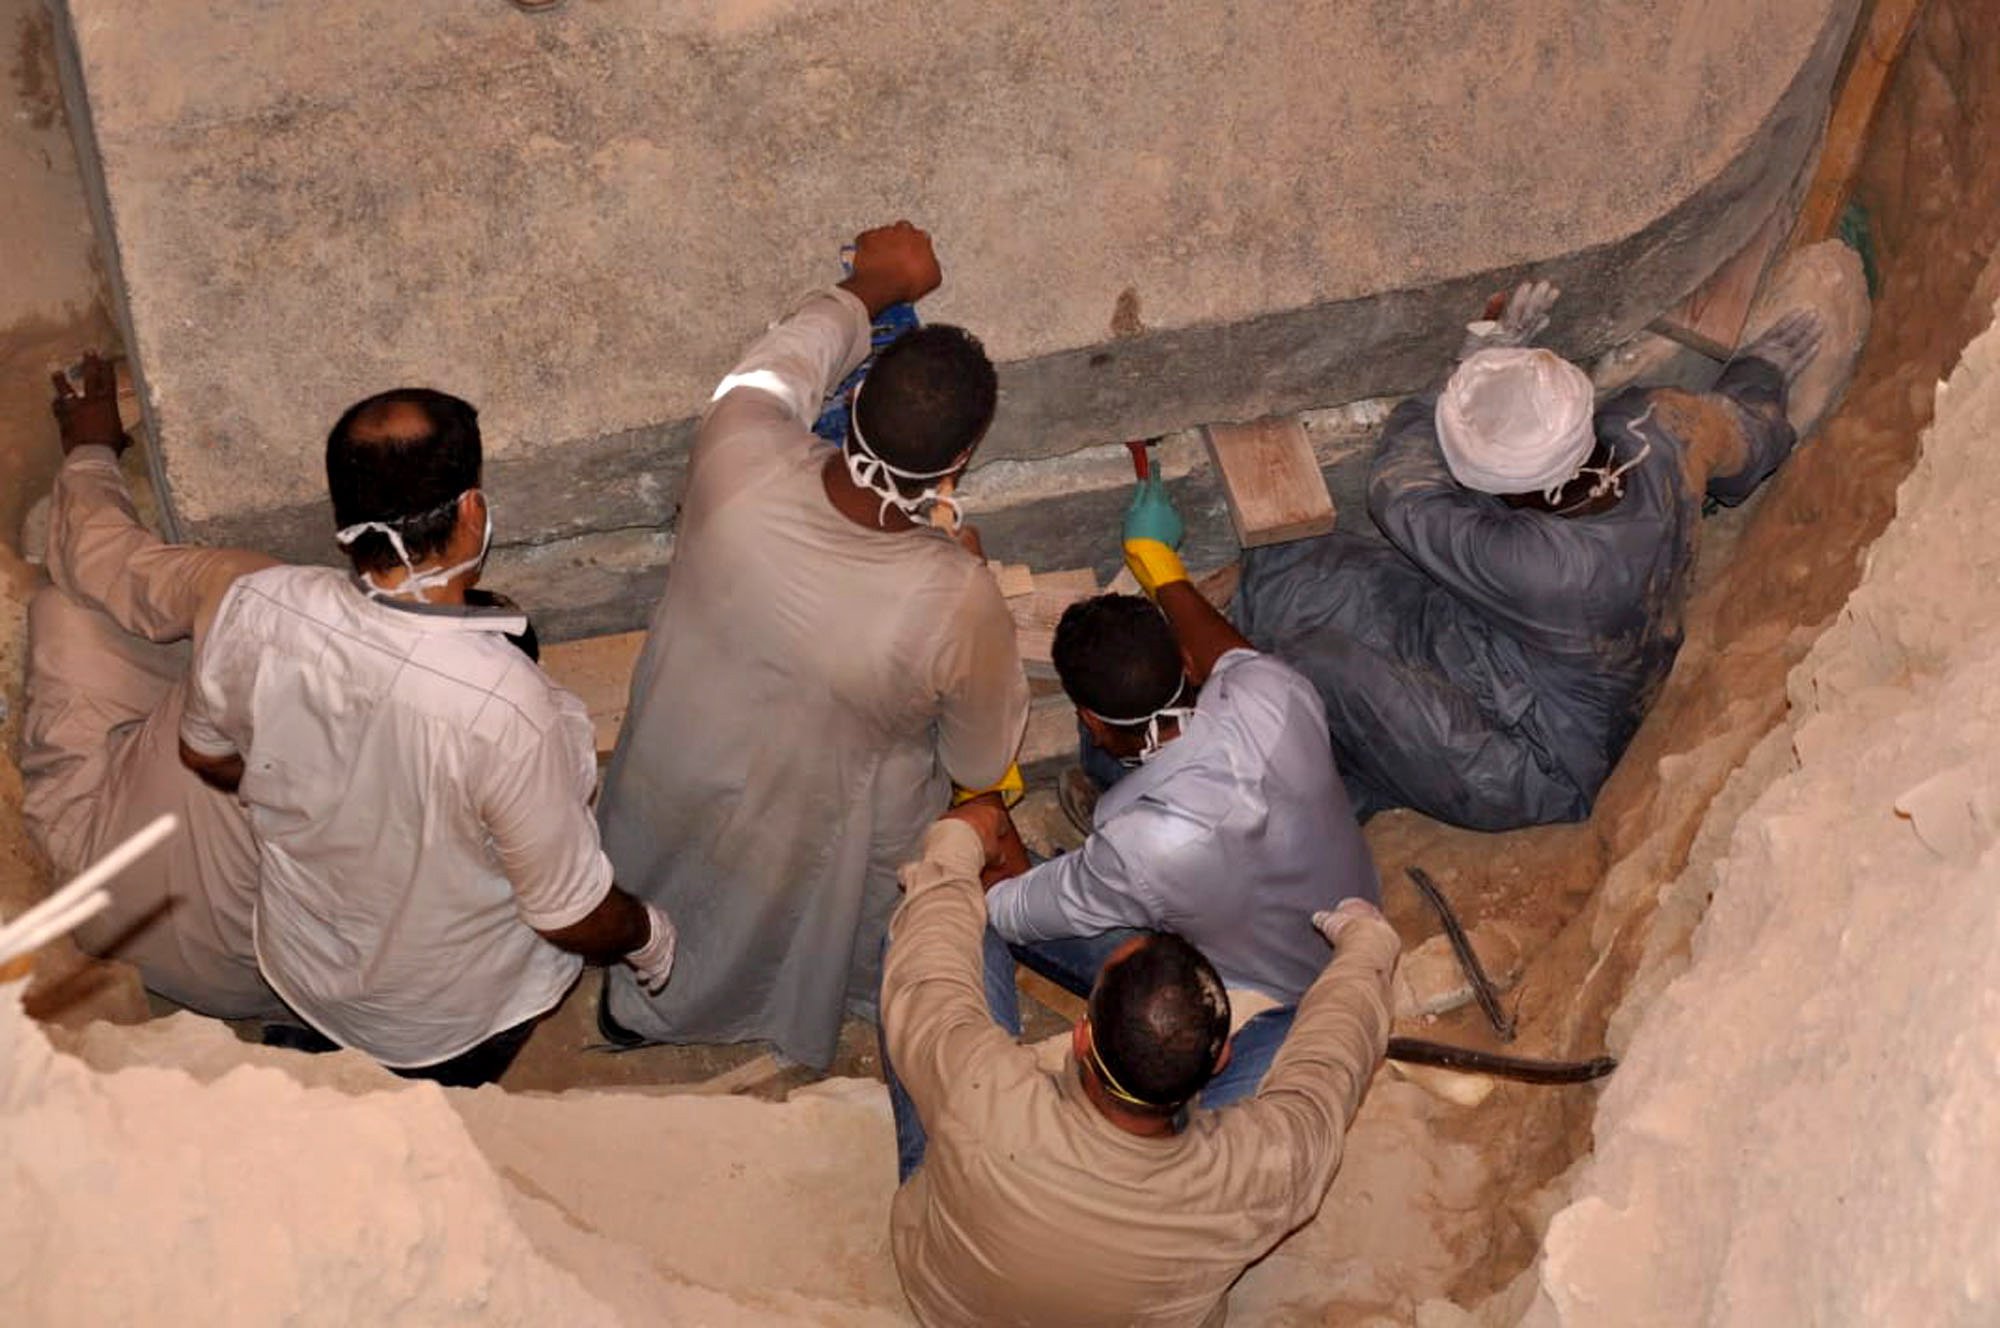 Ingenieros del ejército egipcio al momento de abrir el sarcófago.